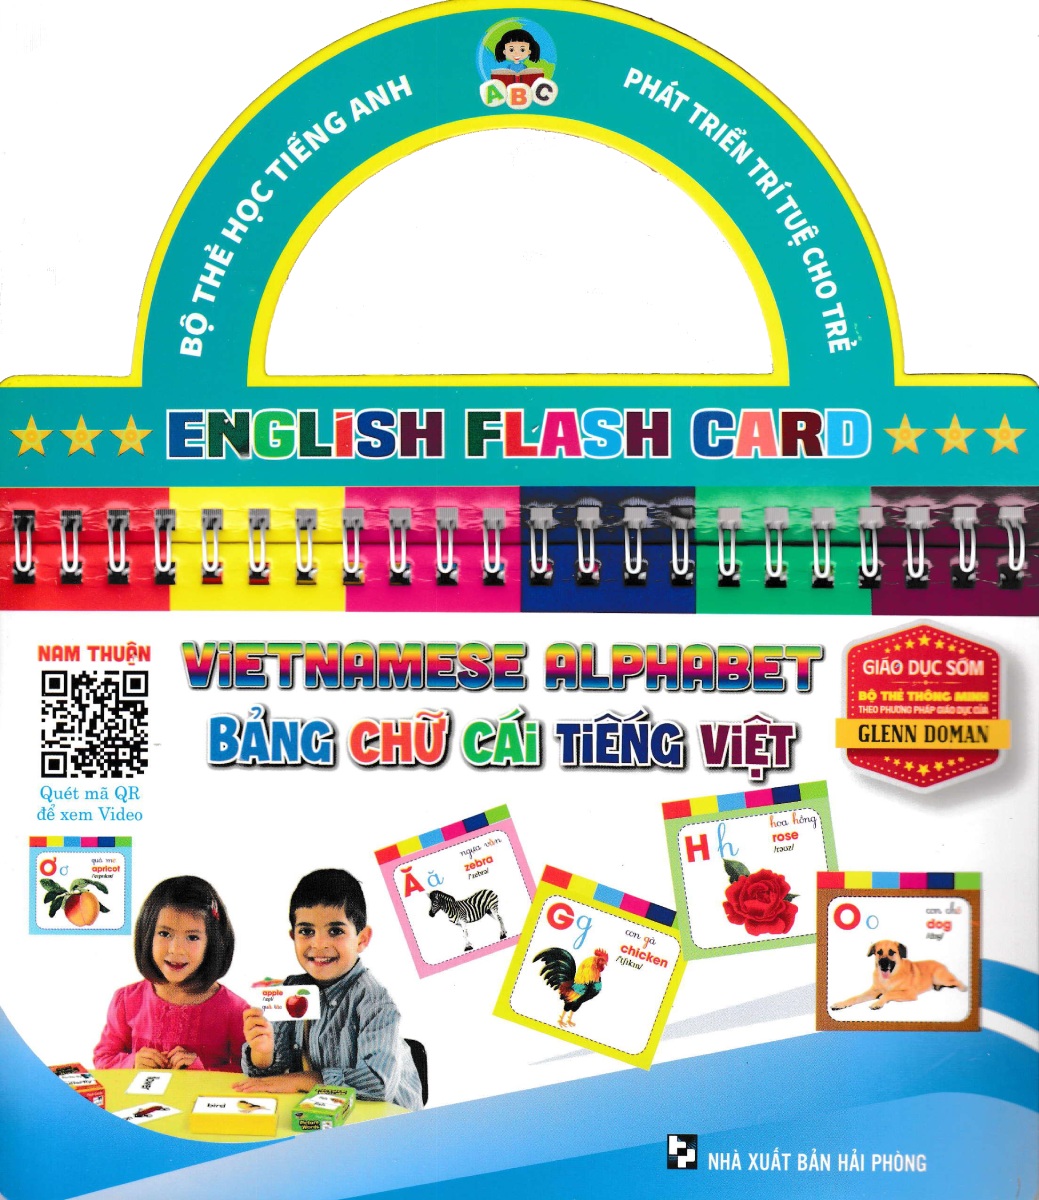 Bộ Thẻ Học Tiếng Anh - Phát Triển Trí Tuệ Cho Trẻ: Bảng Chữ Cái Tiếng Việt